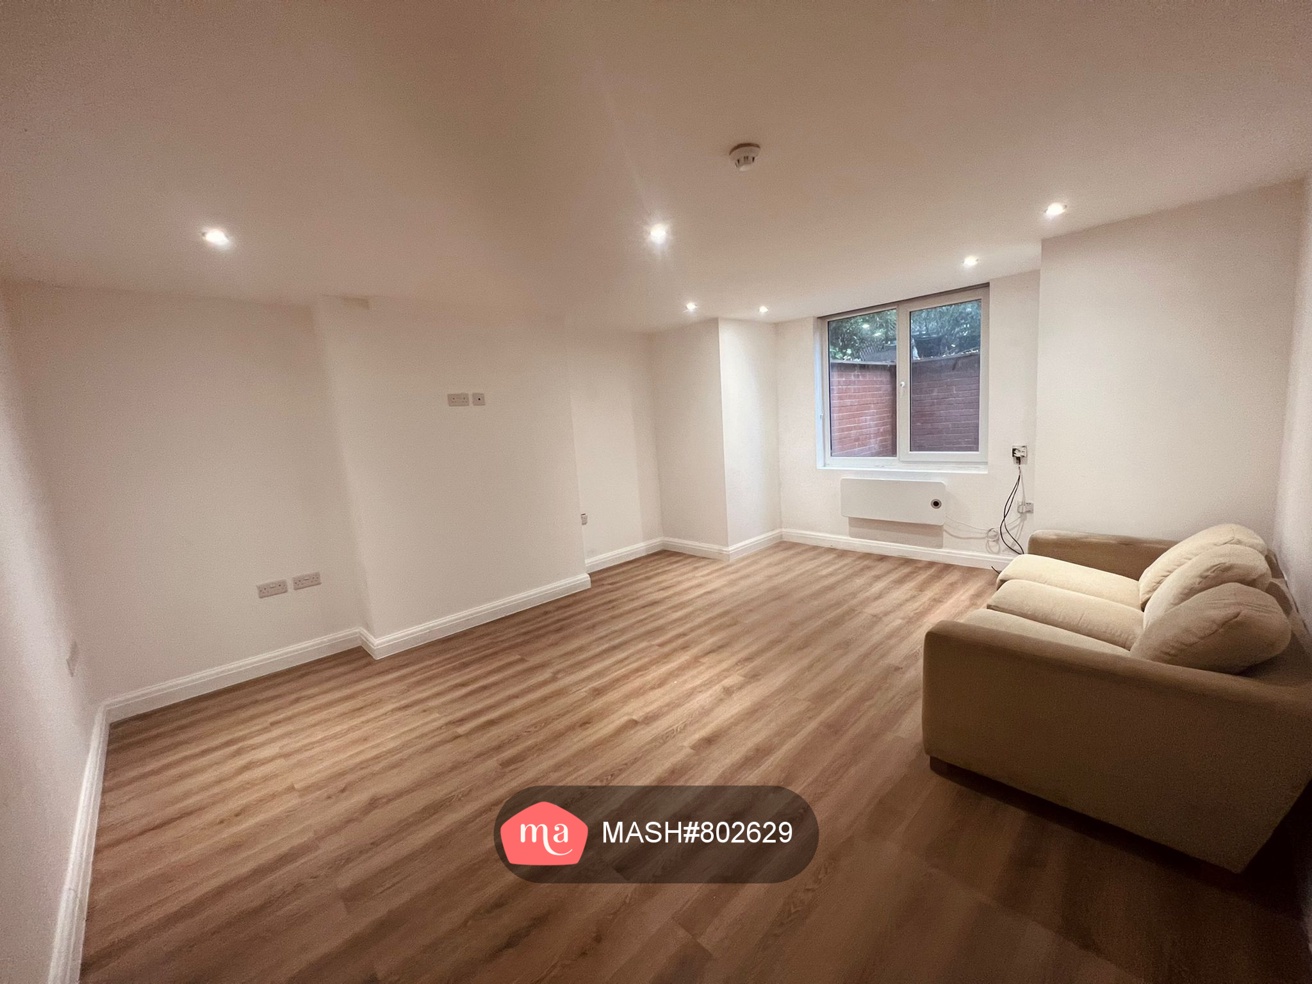 1 Bedroom Flat to rent in Leeds - Mashroom